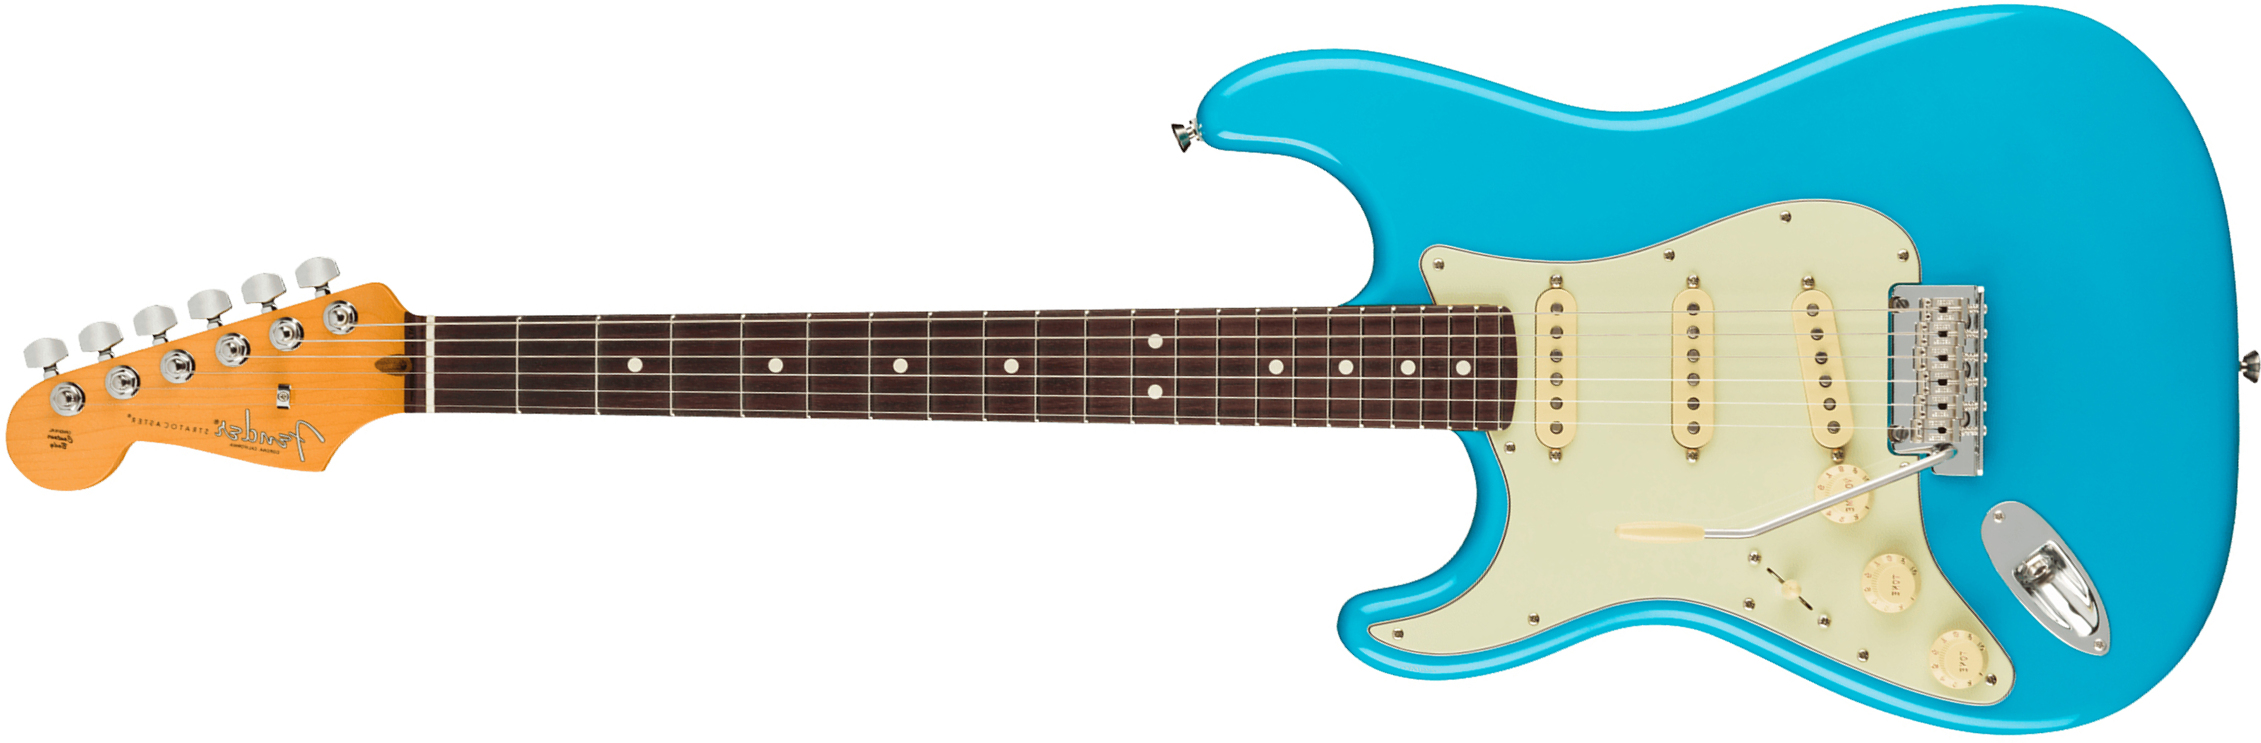 Fender Strat American Professional Ii Lh Gaucher Usa Rw - Miami Blue - E-Gitarre für Linkshänder - Main picture